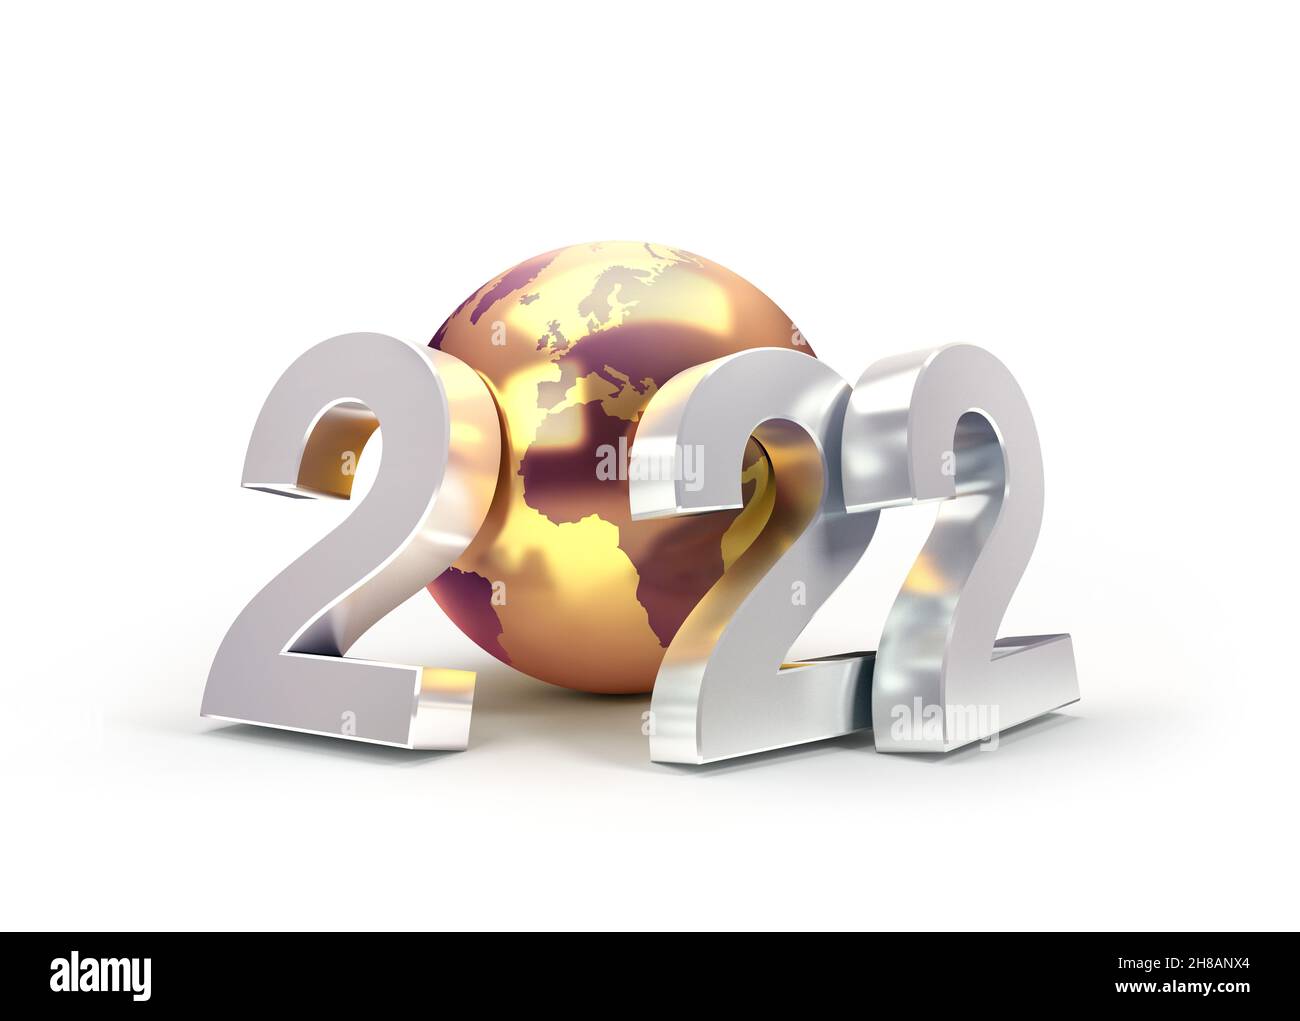 2022 Número de fecha de Año Nuevo compuesto por un planeta dorado tierra, aislado sobre blanco - ilustración 3D Foto de stock